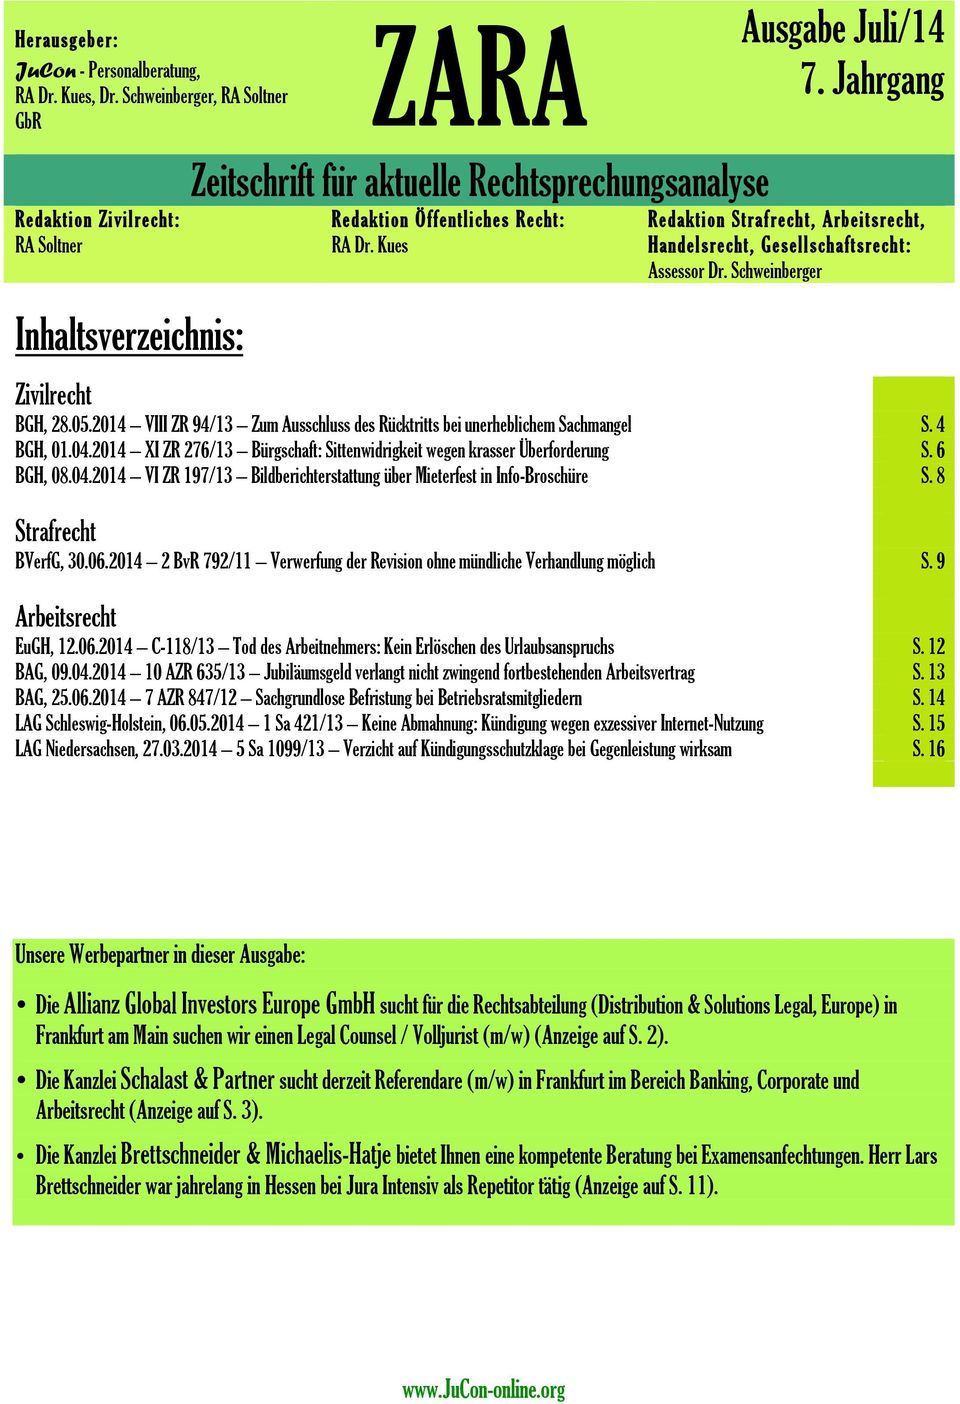 Jahrgang Redaktion Straf rech t, Arbeits rec ht, Handelsrecht, Gesellschafts rech t: Assessor Dr. Schweinberger Zivilrecht BGH, 28.05.